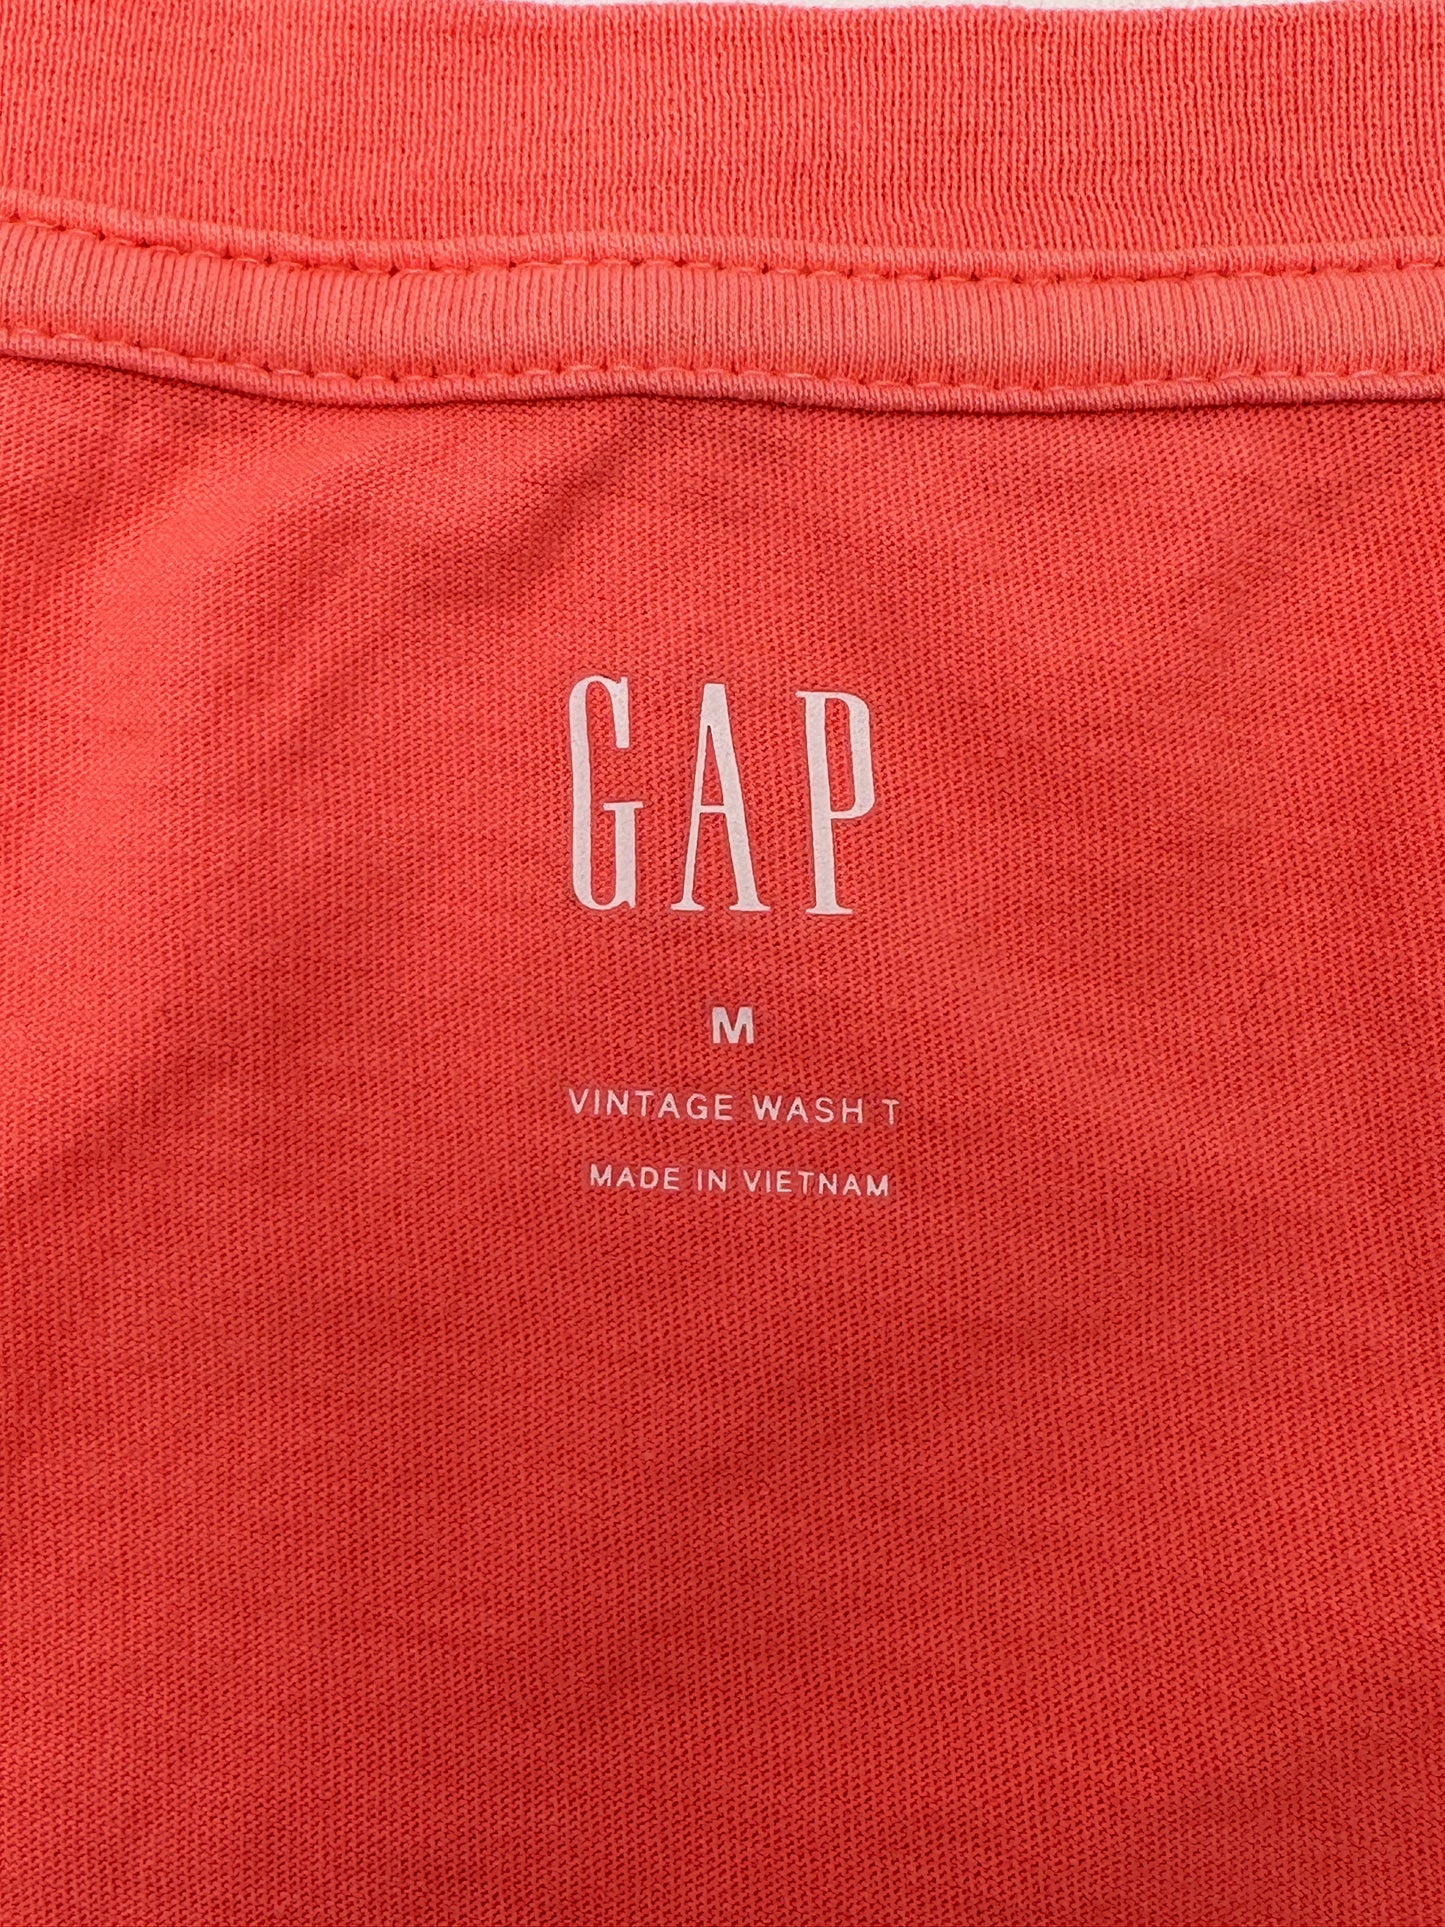 GAP Size M Coral V-Neck Short Sleeve Vintage Wash T Tee T-Shirt